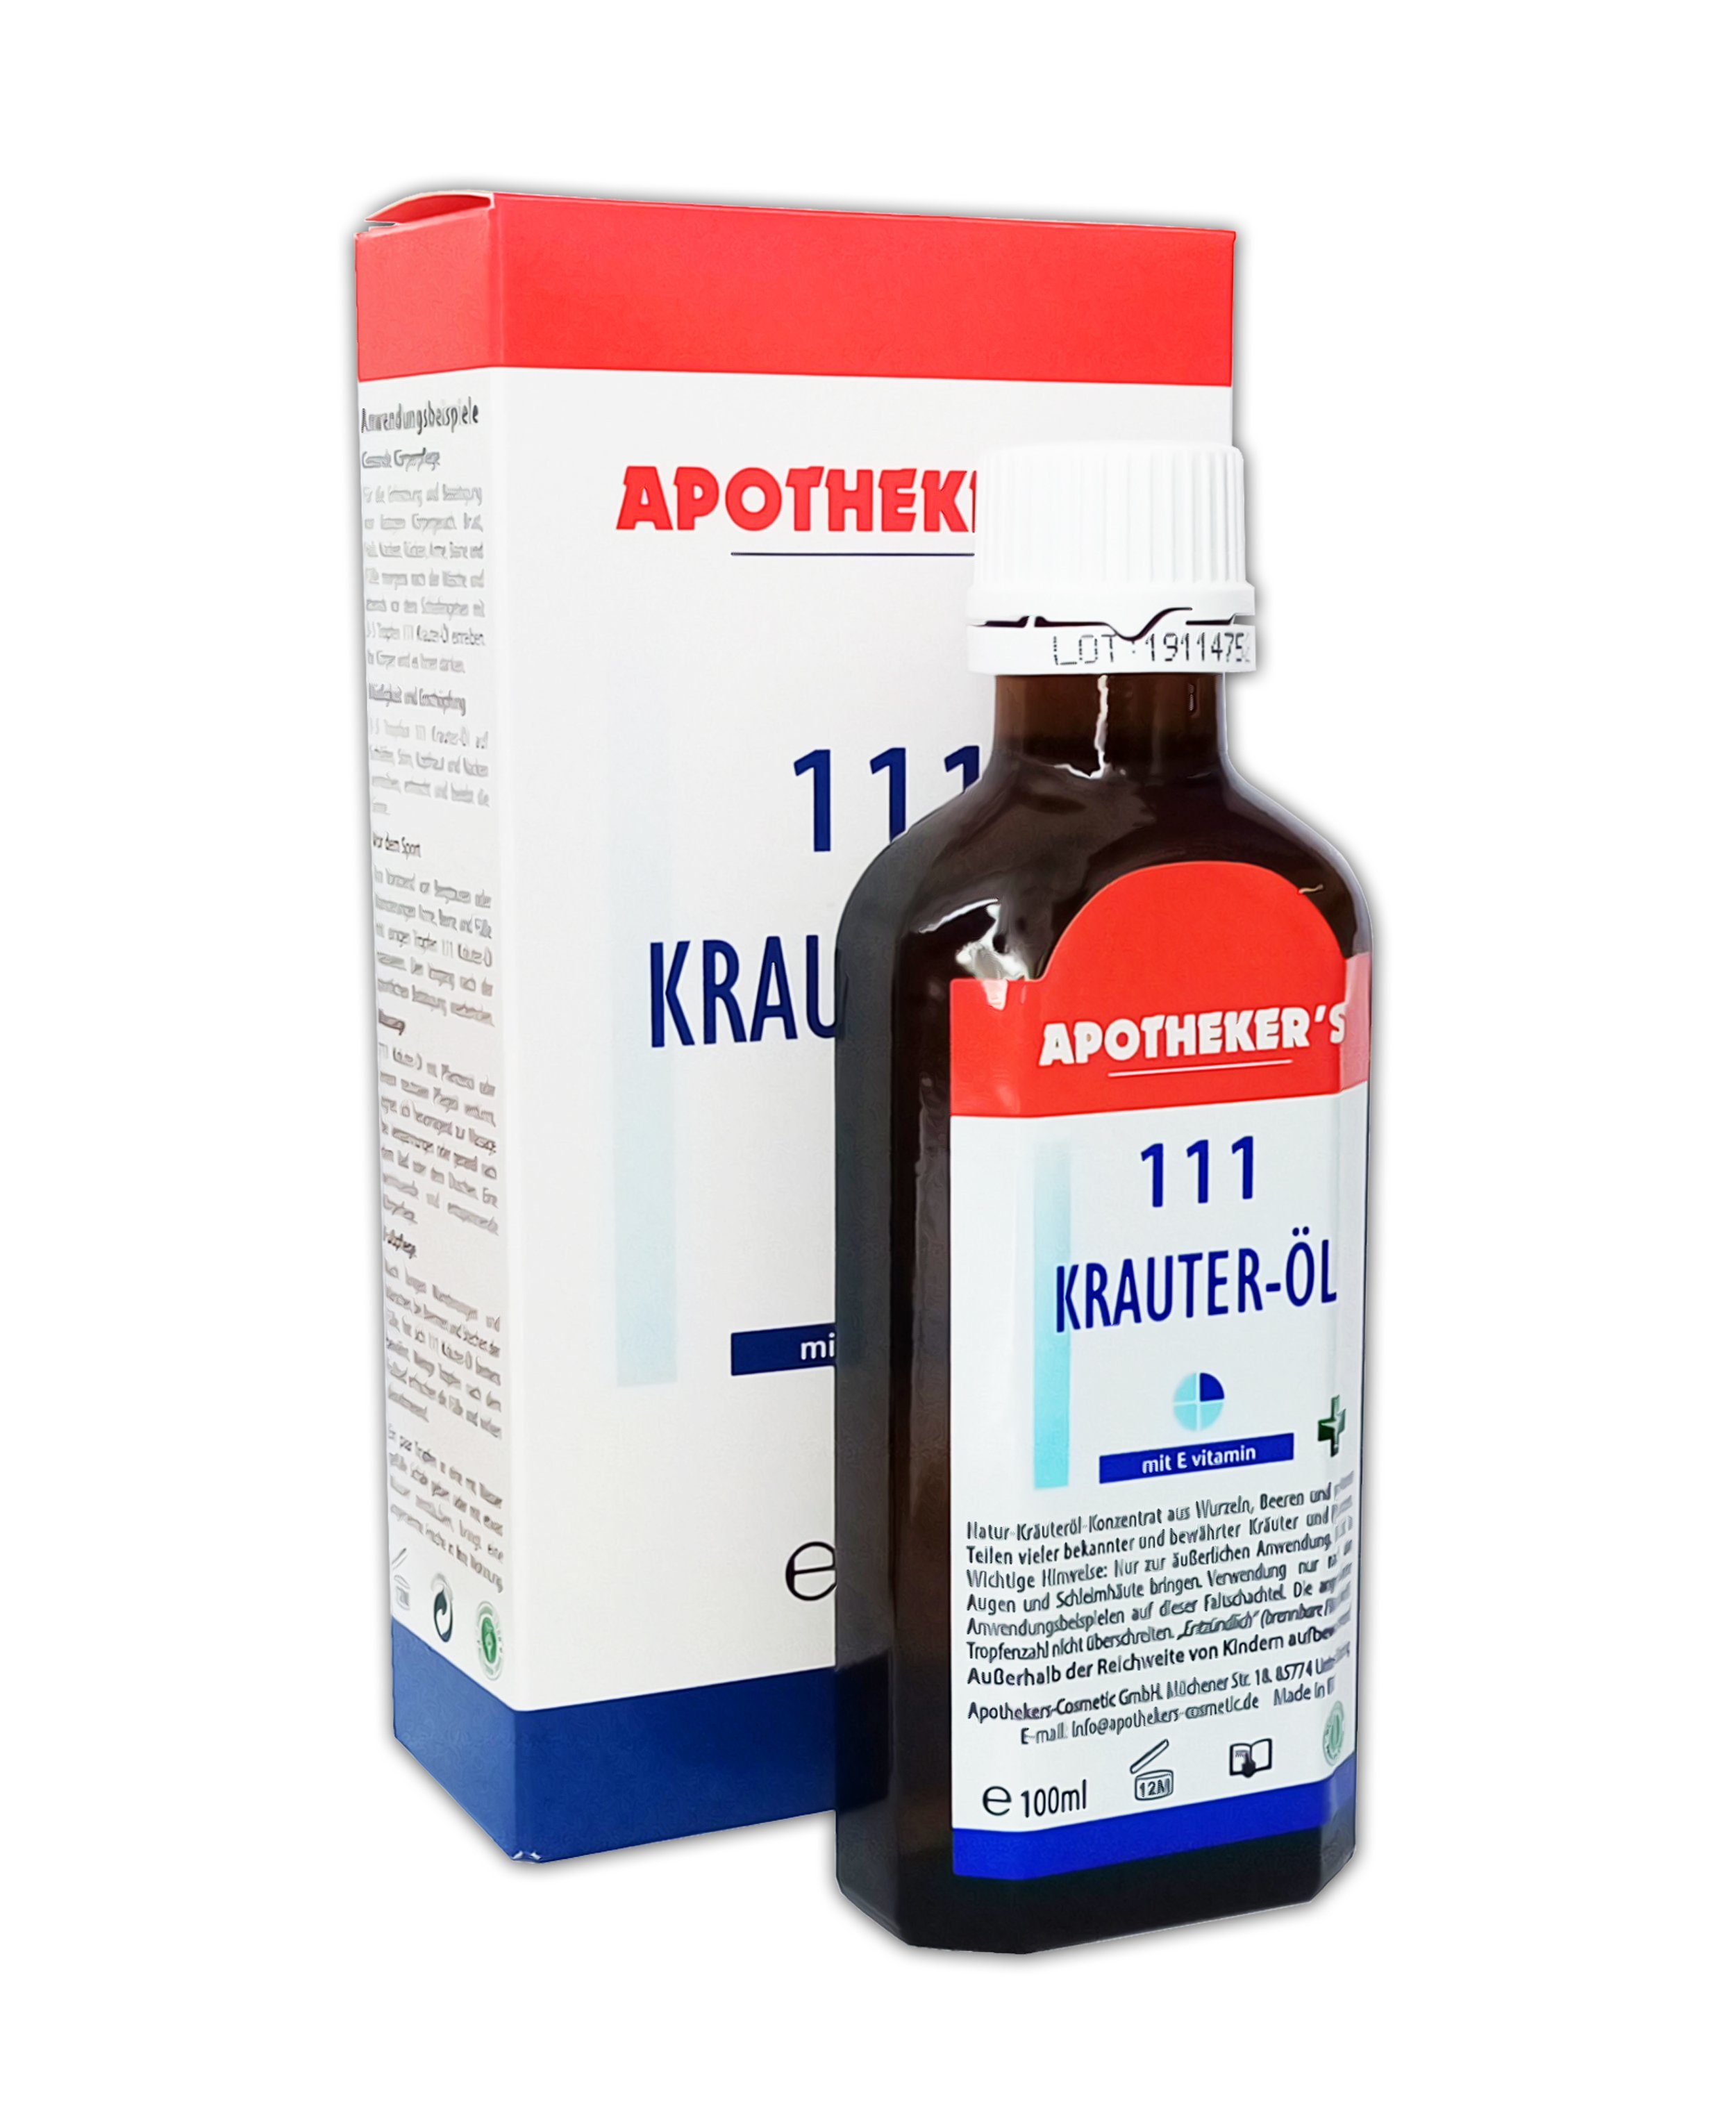 Naturkräuteröl 1-tlg. APOTHEKER'S & 100ml Massageöl Körperpflege Kräuteröl 111 mit 47, Kräuter-Öl E-vitamin Gleit-